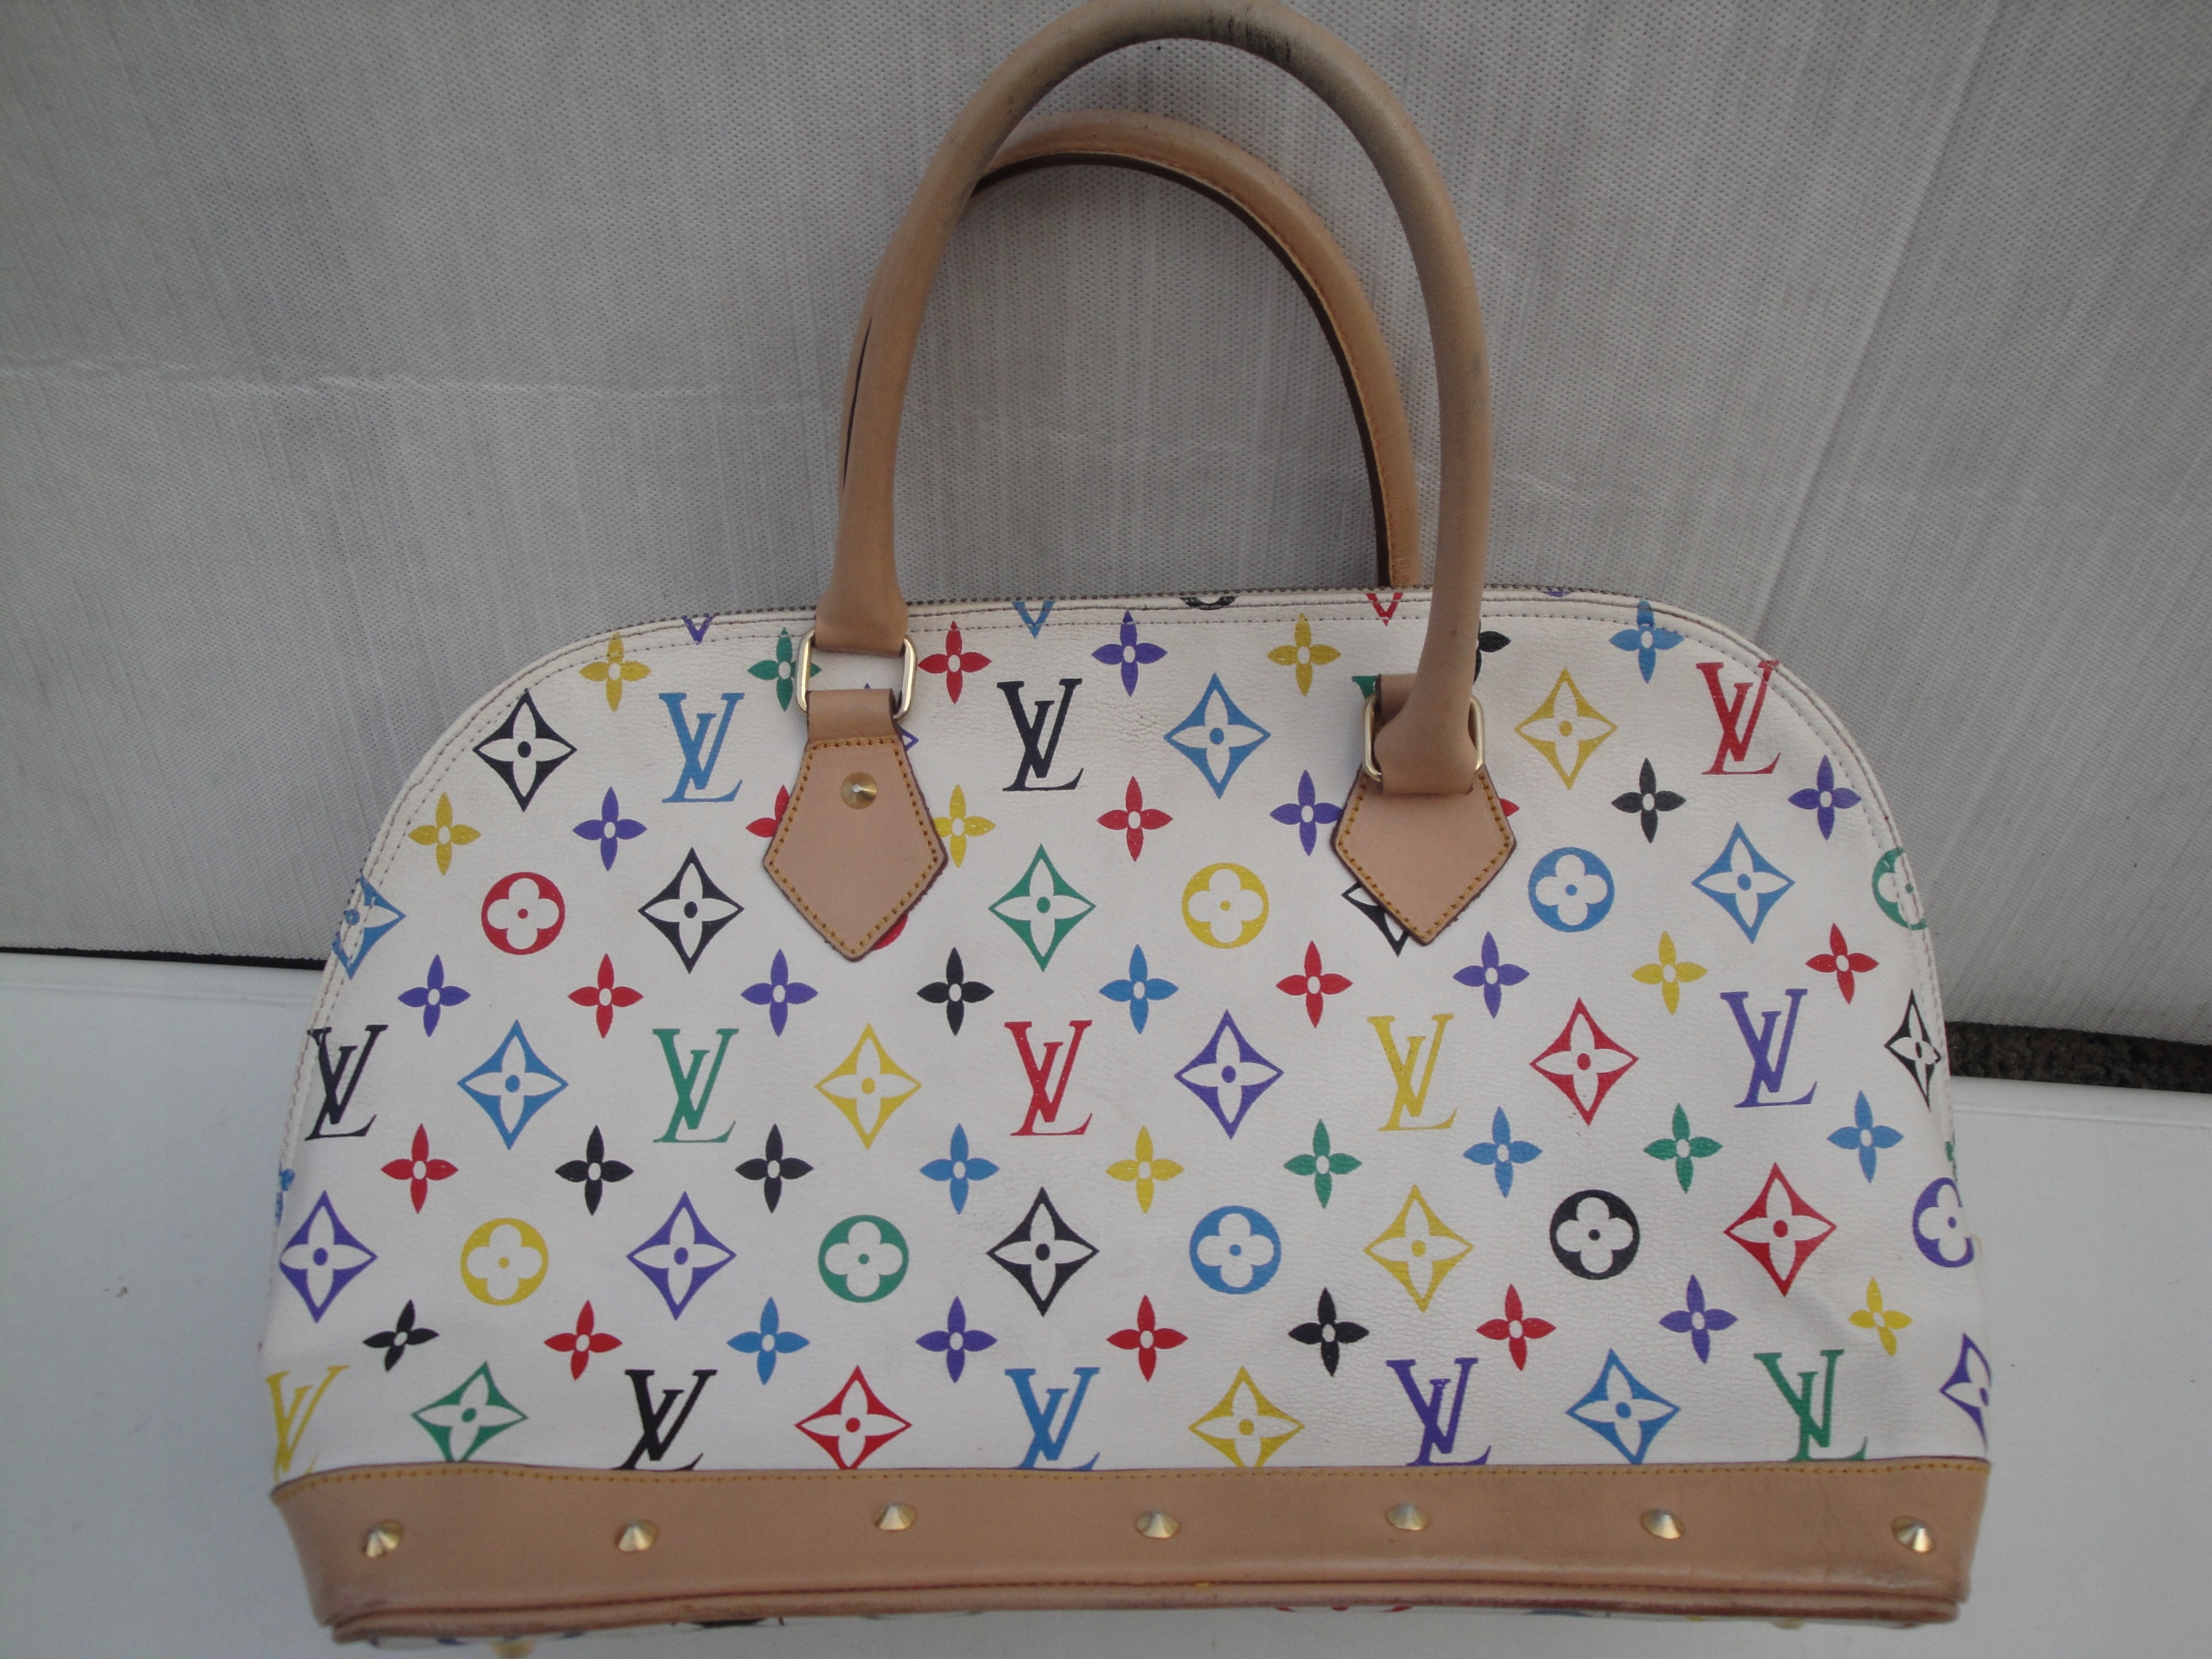 Kup Torebki damskie Louis Vuitton online na Shopsy